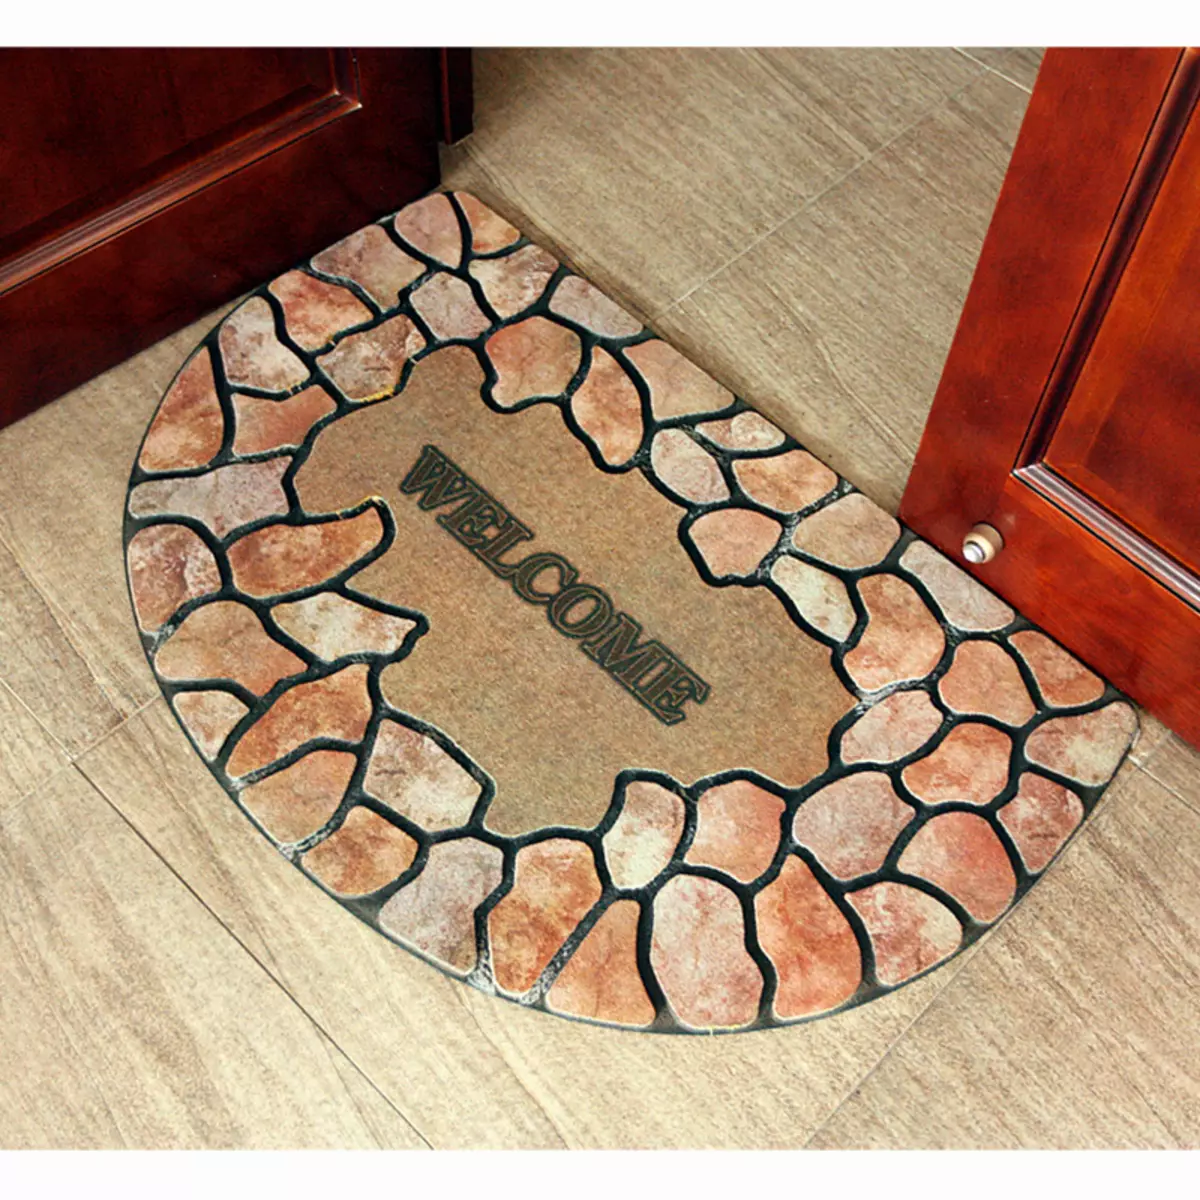 Mattor i korridoren (57 bilder): Svetsade mattor och mattor för skor i korridoren, modell på golvet från matta och andra material 9287_23